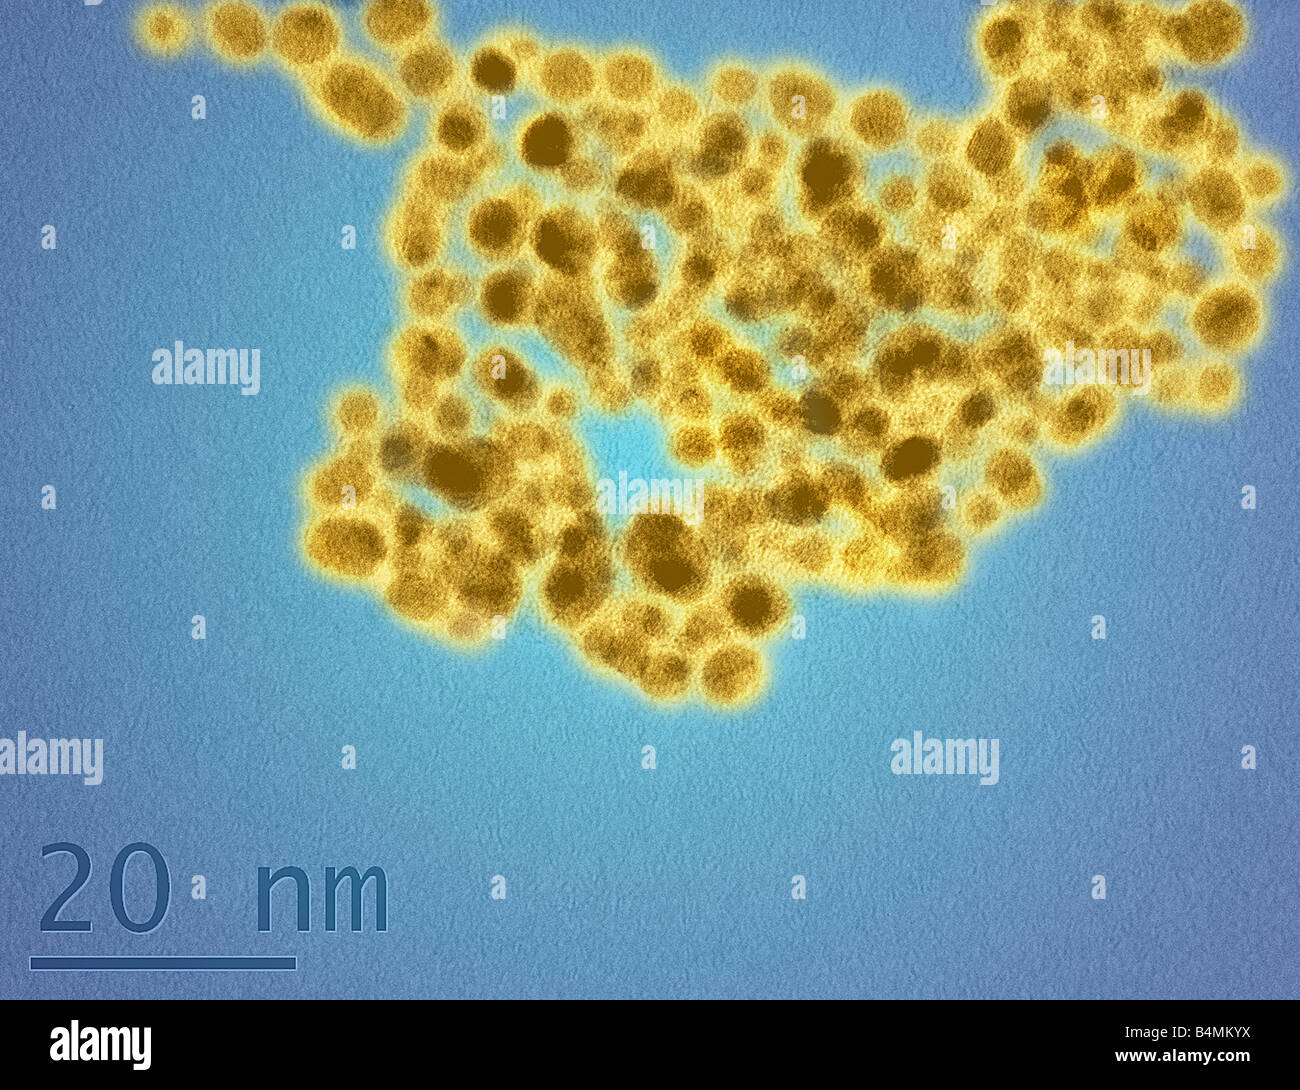 Ein TEM-Bild der gold-Nanopartikel Beschichtung Zellen in eine Glutathion Oberfläche Corona zur Veranschaulichung der molekularen Größe von Nanopartikeln Stockfoto